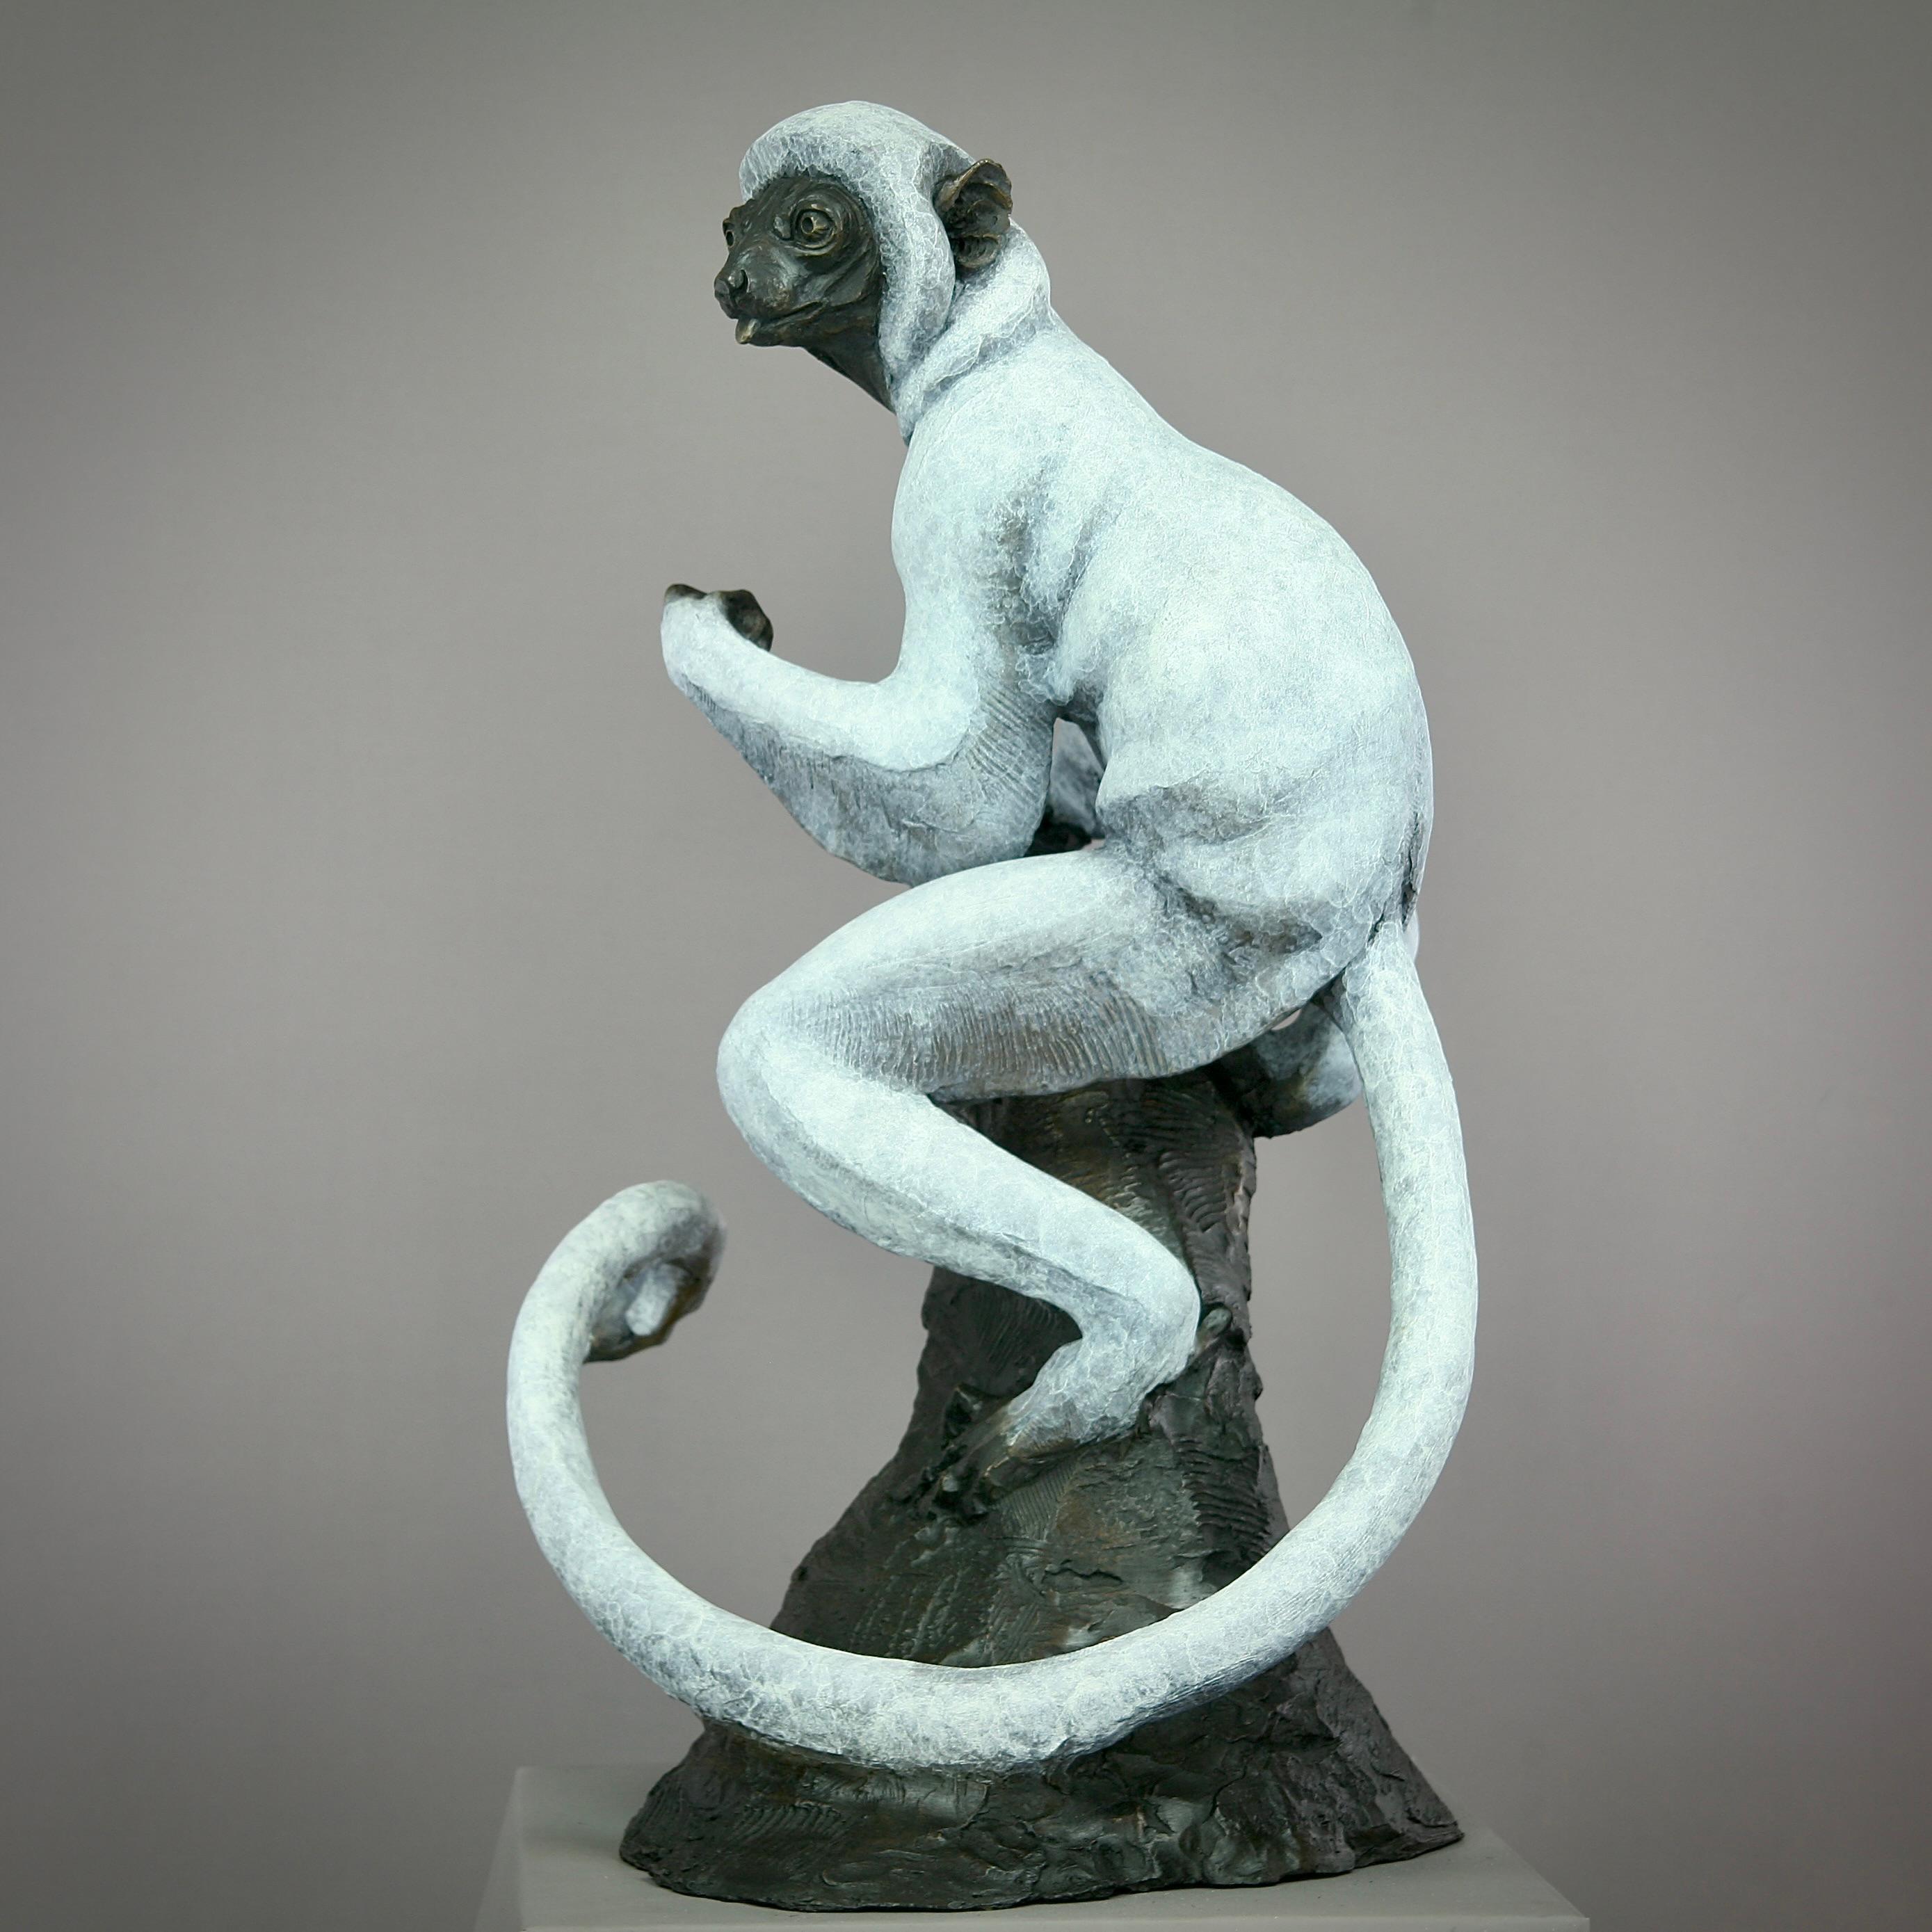 Sifaka Lemur - sculpture en bronze originale et moderne sur la vie sauvage - Contemporary Art - Sculpture de Andrzej Szymczyk